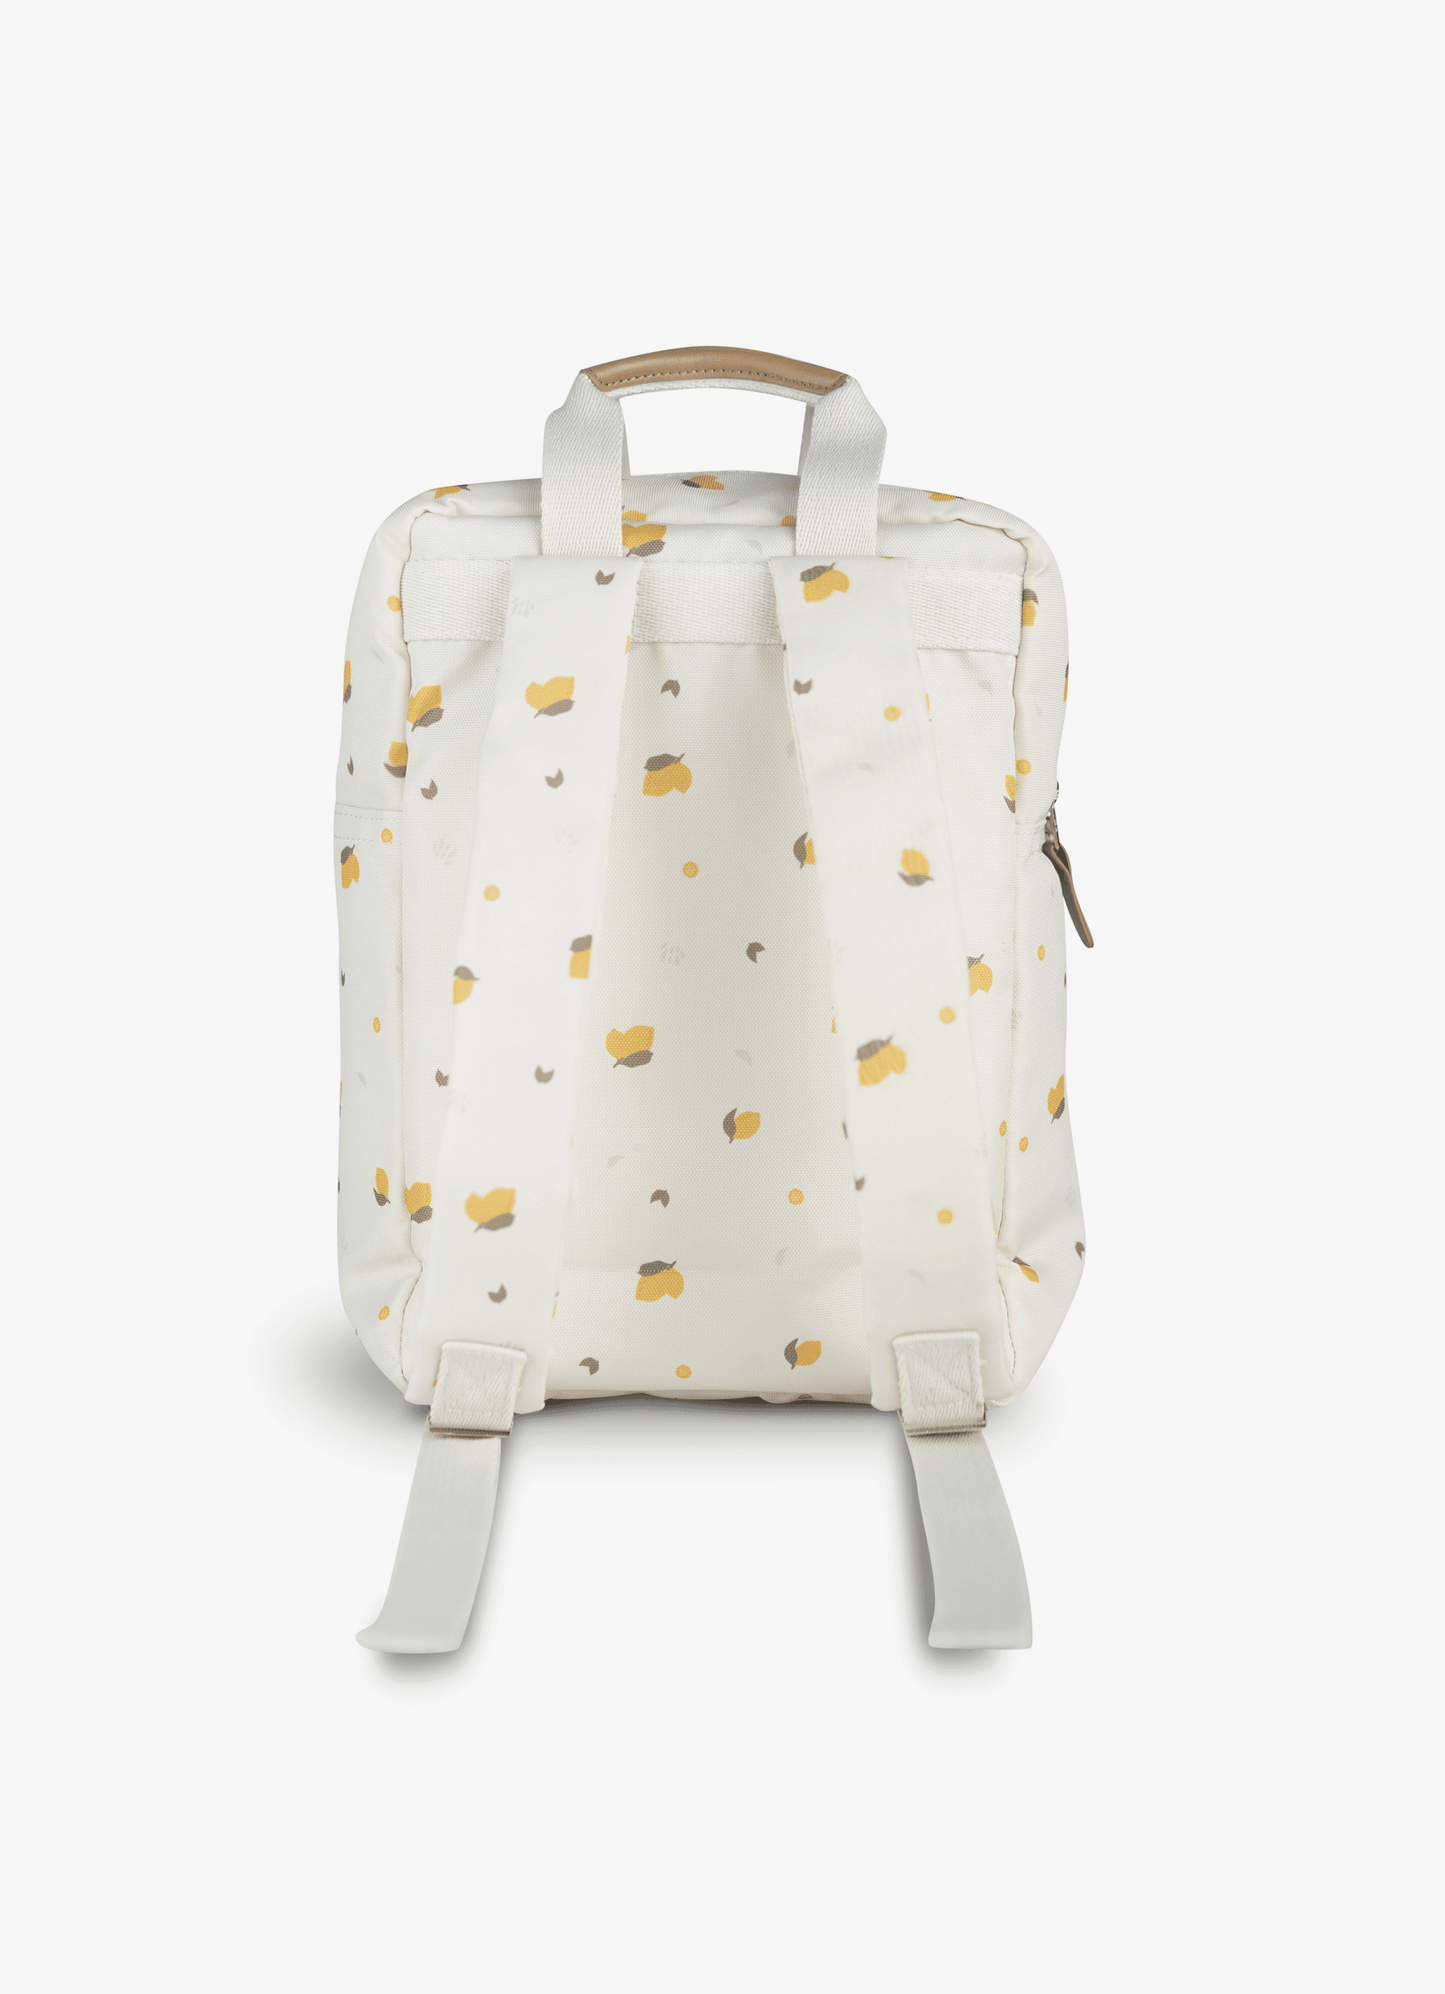 Kids Backpack - Lemon